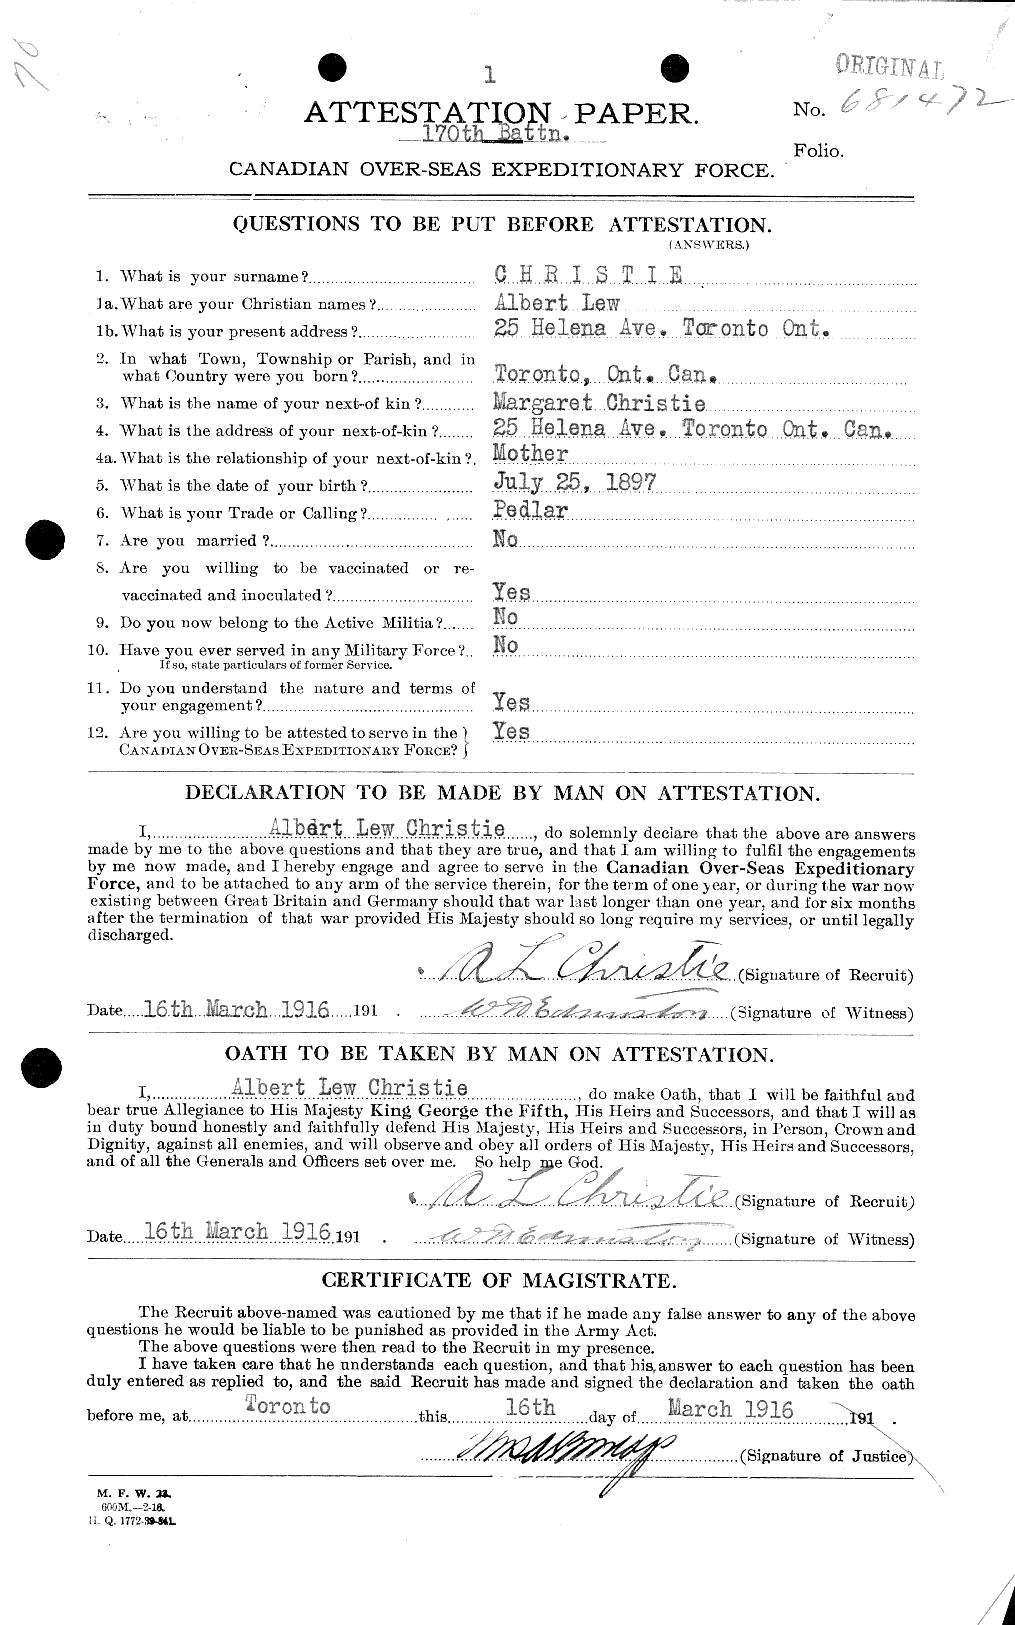 Dossiers du Personnel de la Première Guerre mondiale - CEC 021855a